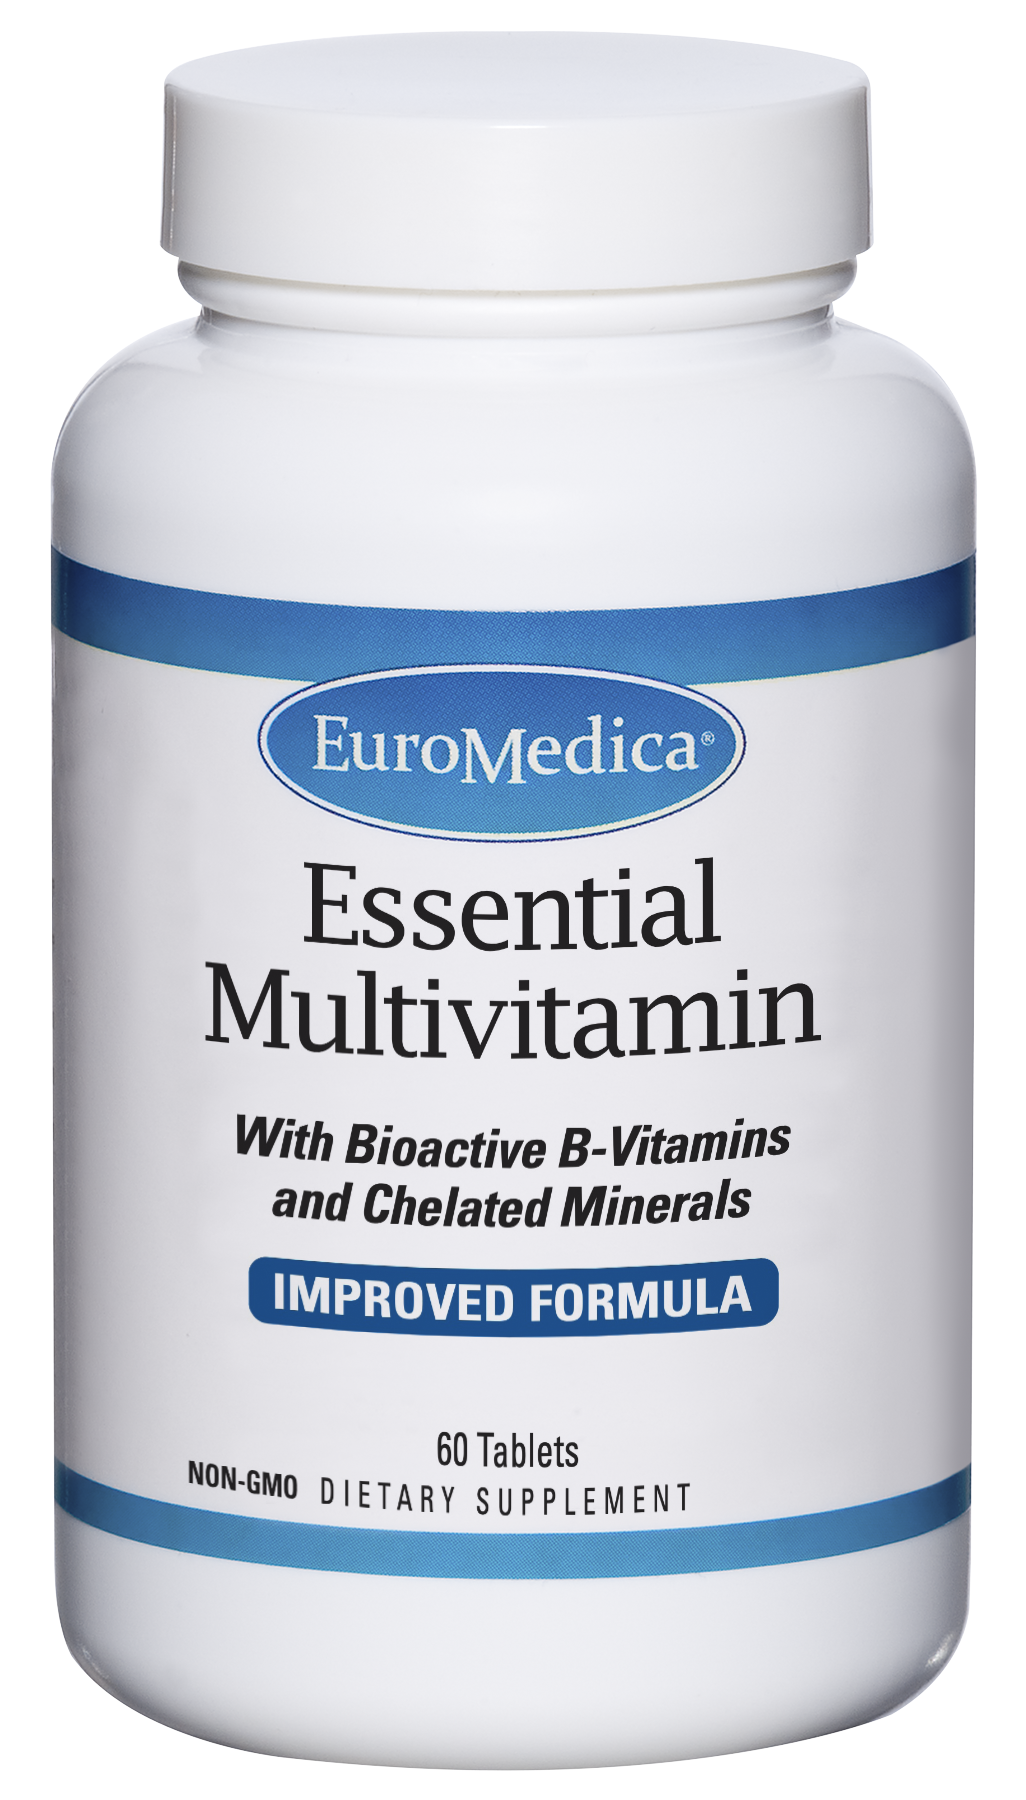 Essential Multivitamin bottle